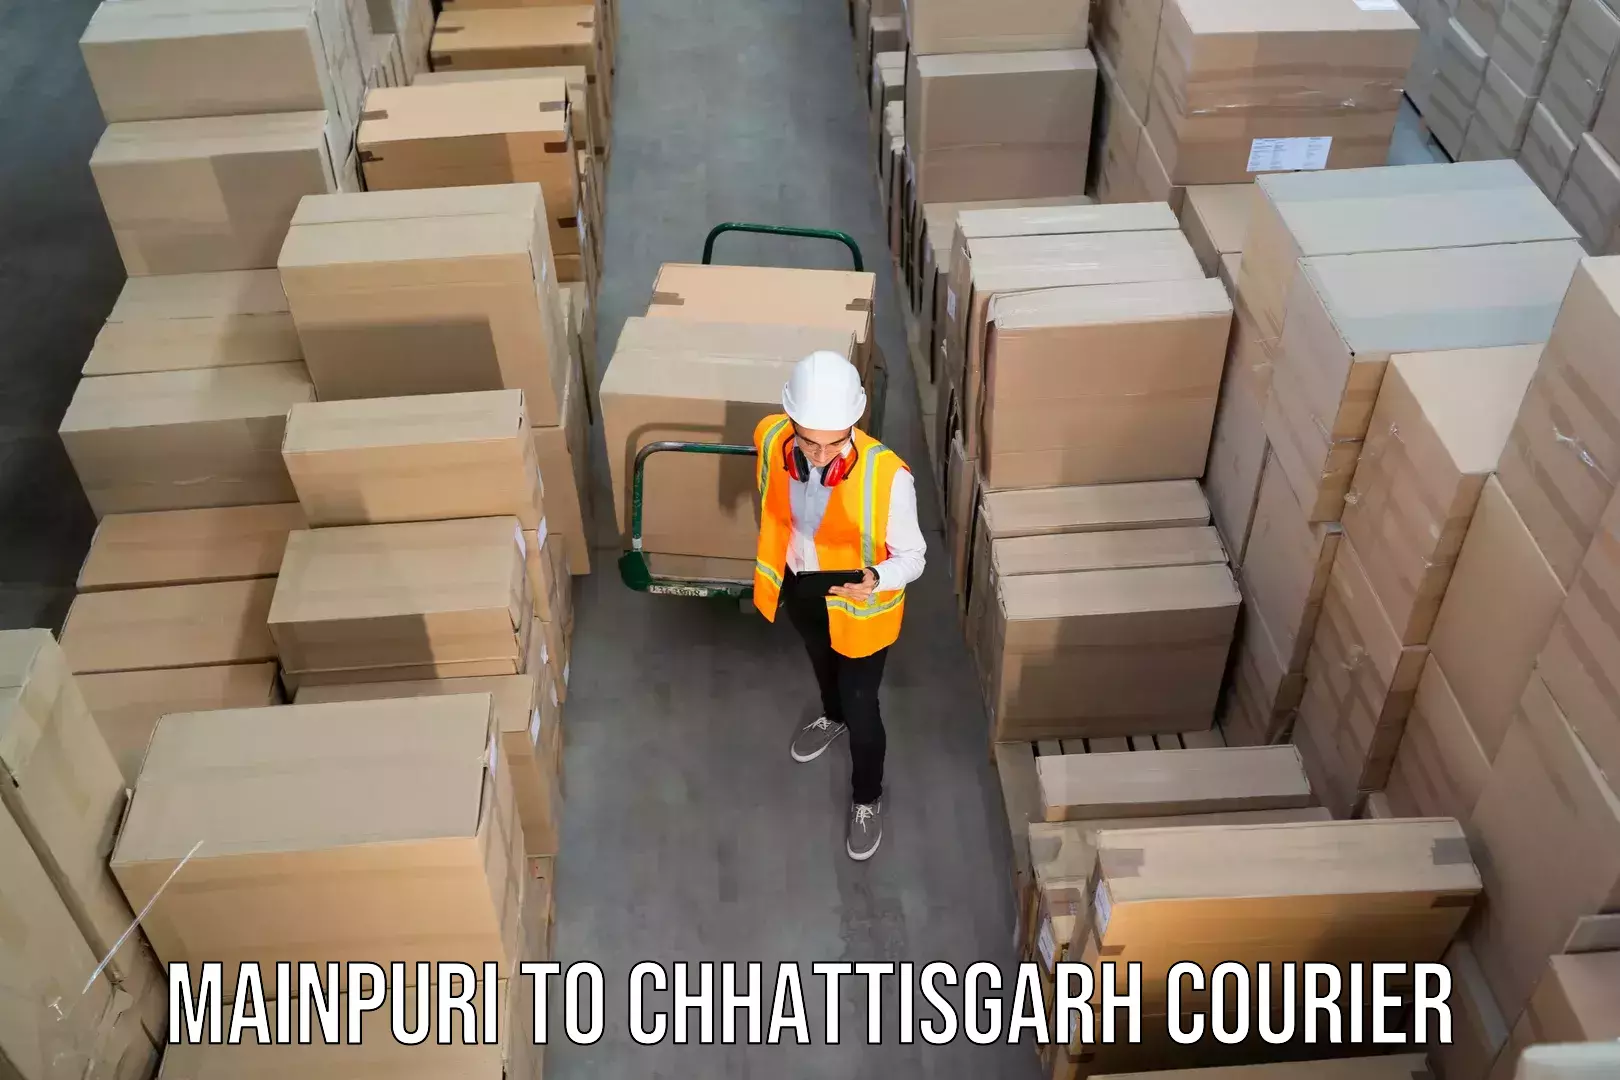 Next-day freight services Mainpuri to Chhattisgarh